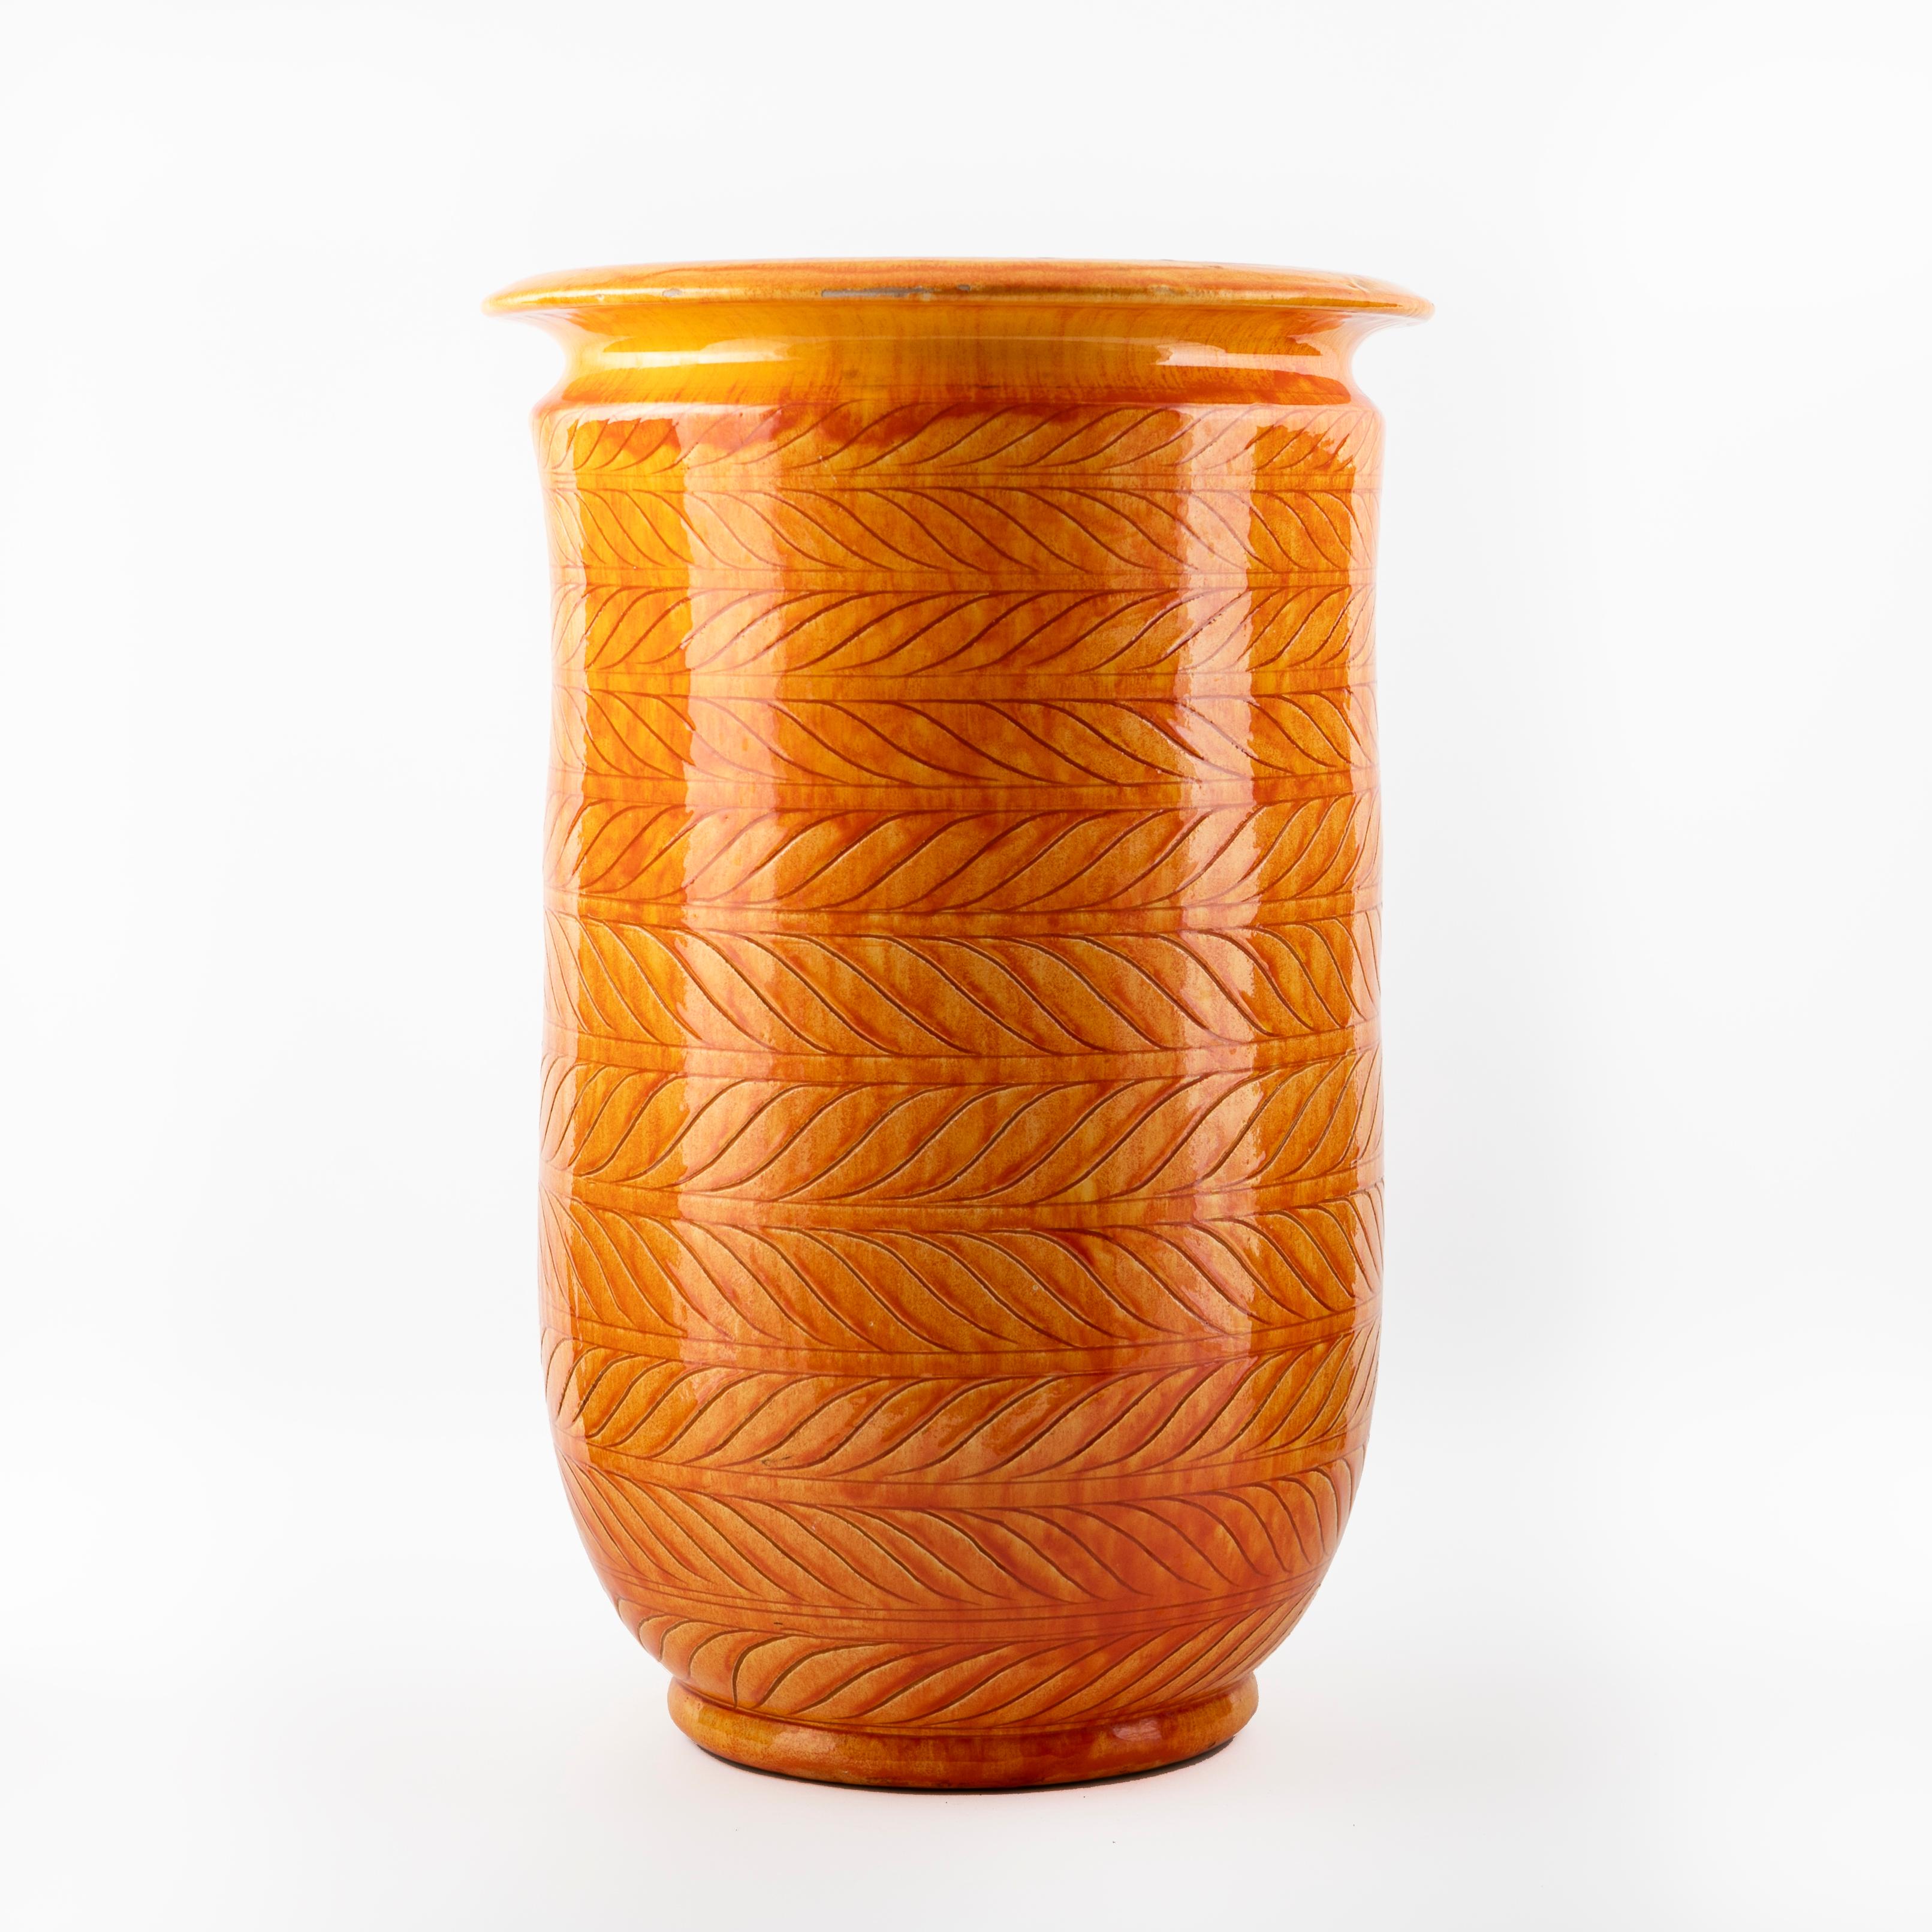 Grand vase de sol en grès, unique en son genre, de forme cylindrique haute, par Svend Hammershøi pour Kähler. H : 48 cm.
Belle glaçure jaune orangé. Le corps du vase est décoré d'un motif moderne de feuilles stylisées.

Un superbe vase en très bon